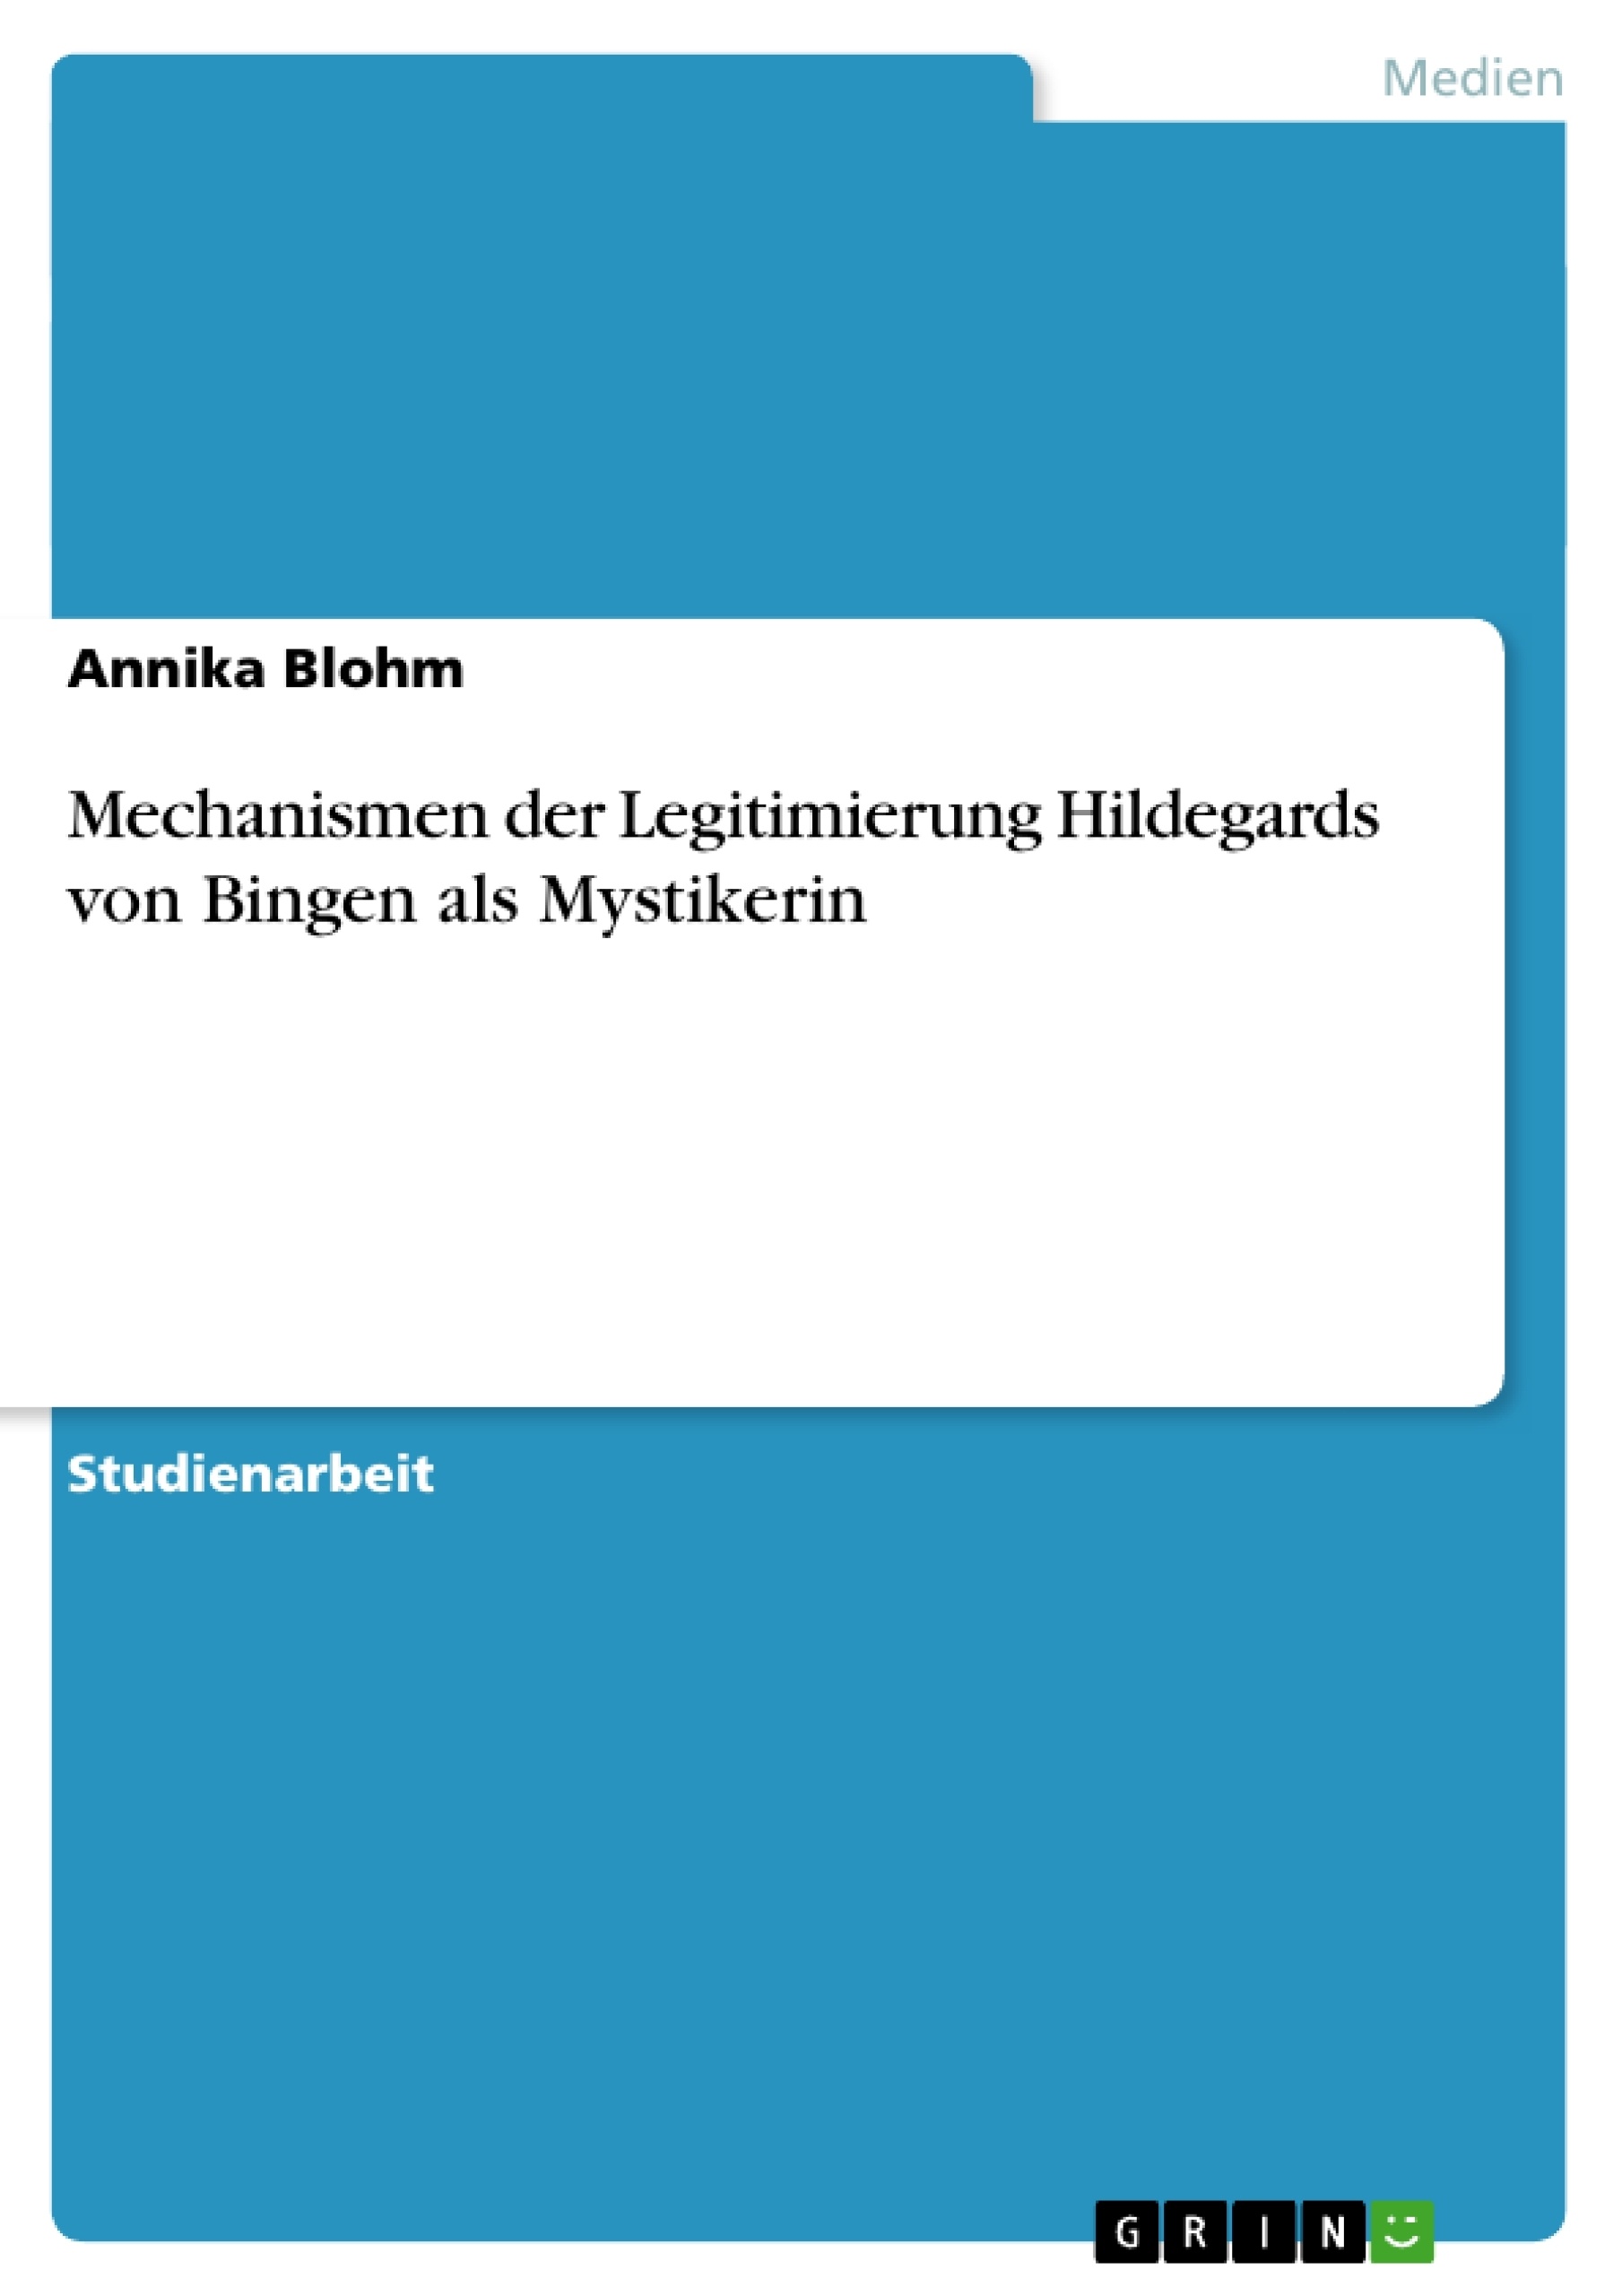 Title: Mechanismen der Legitimierung Hildegards von Bingen als Mystikerin